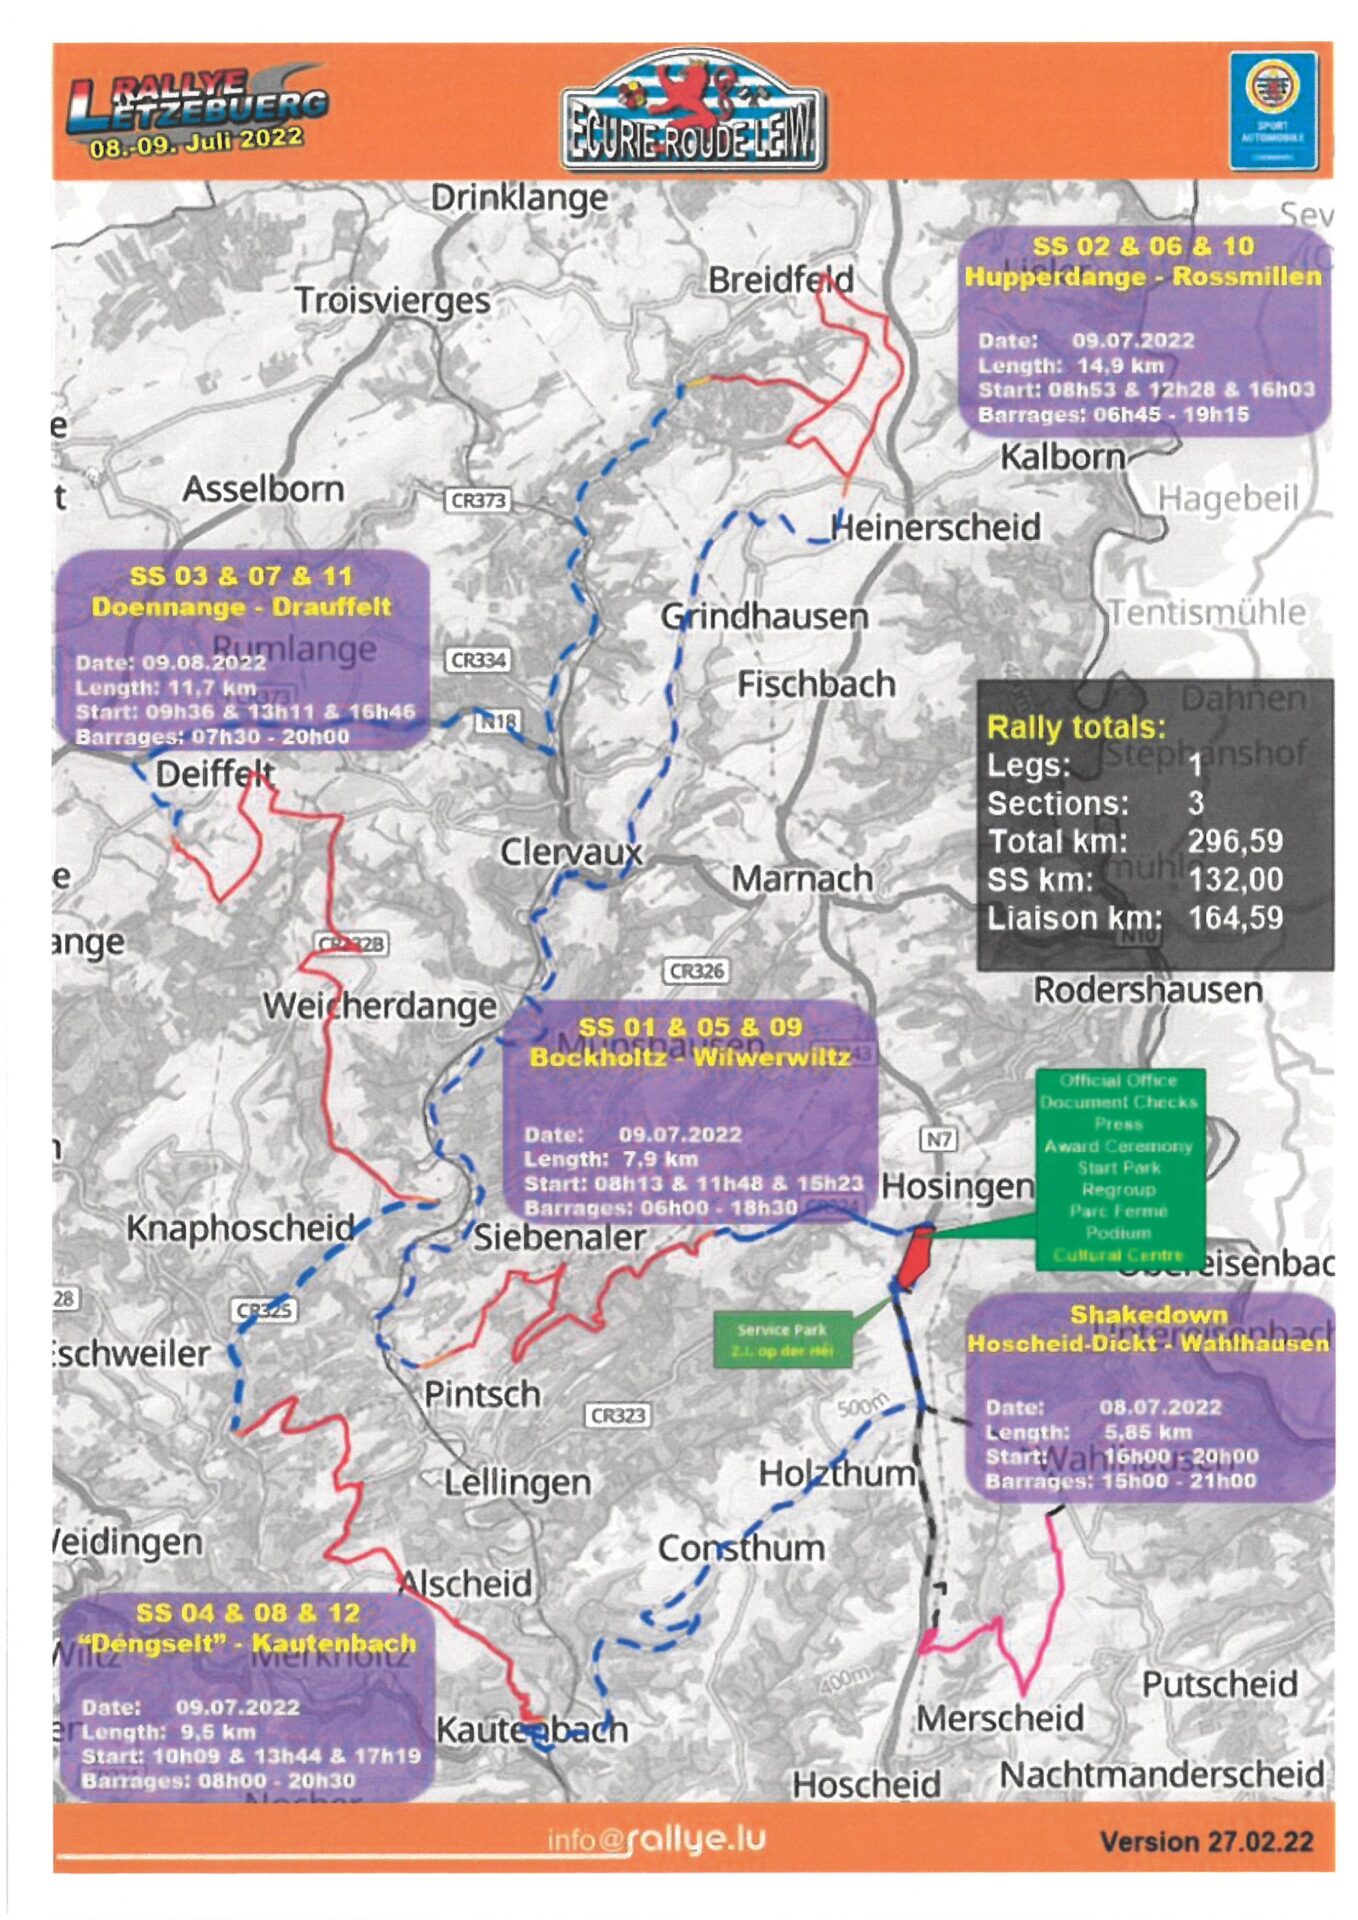 Rallye Luxembourg - Plans - 9 juillet 2022_1